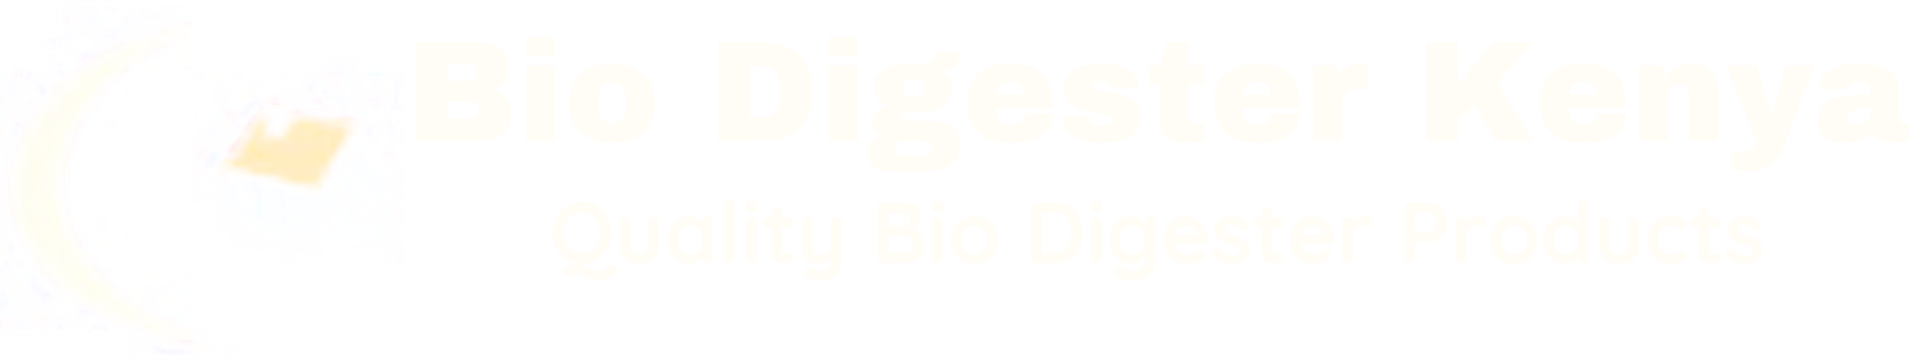 kenya-bio-digesters-white-logo